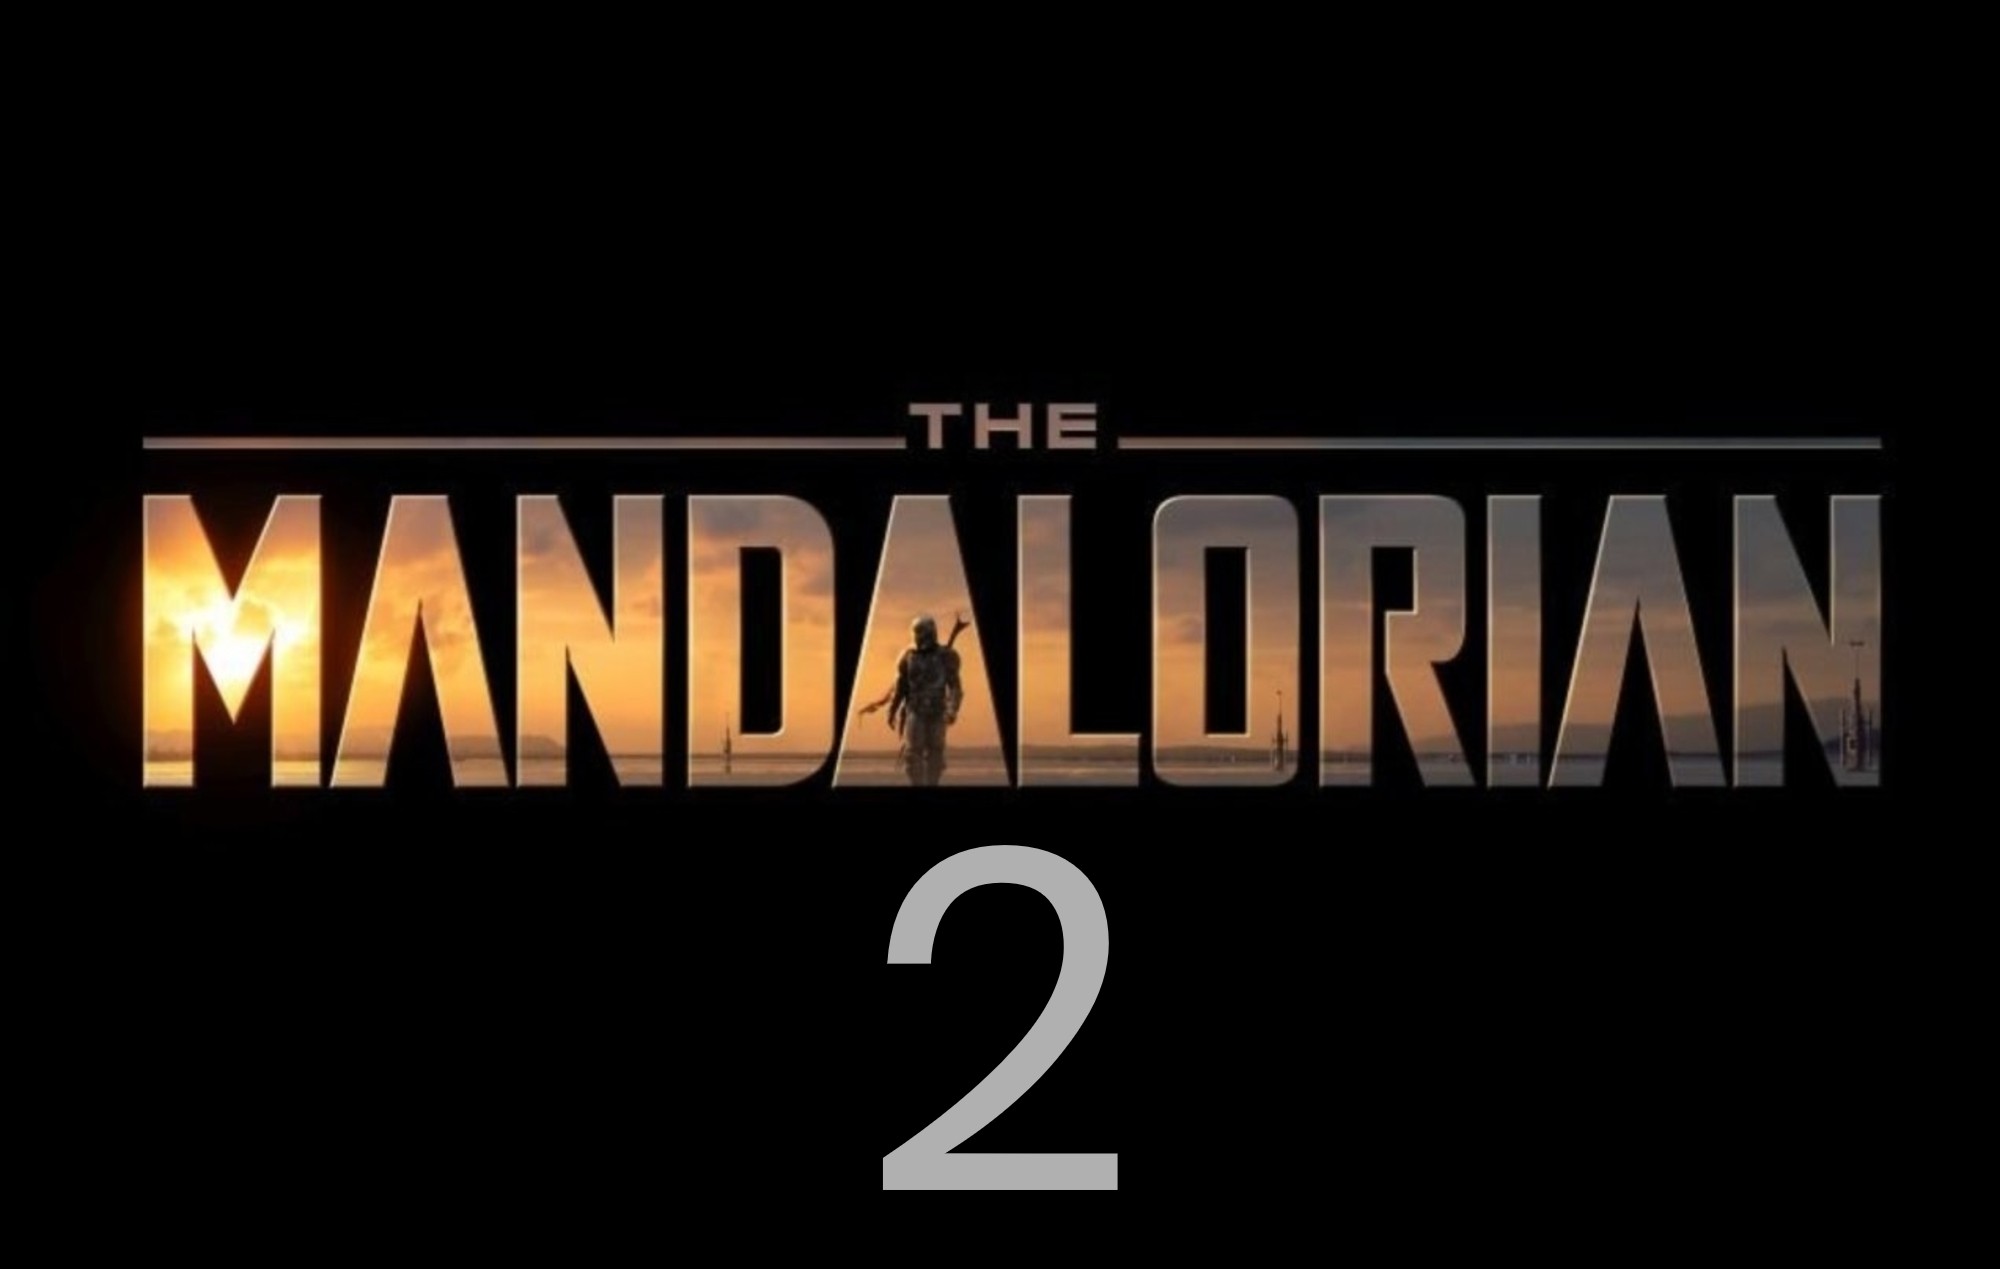 Mandalorian Season 2